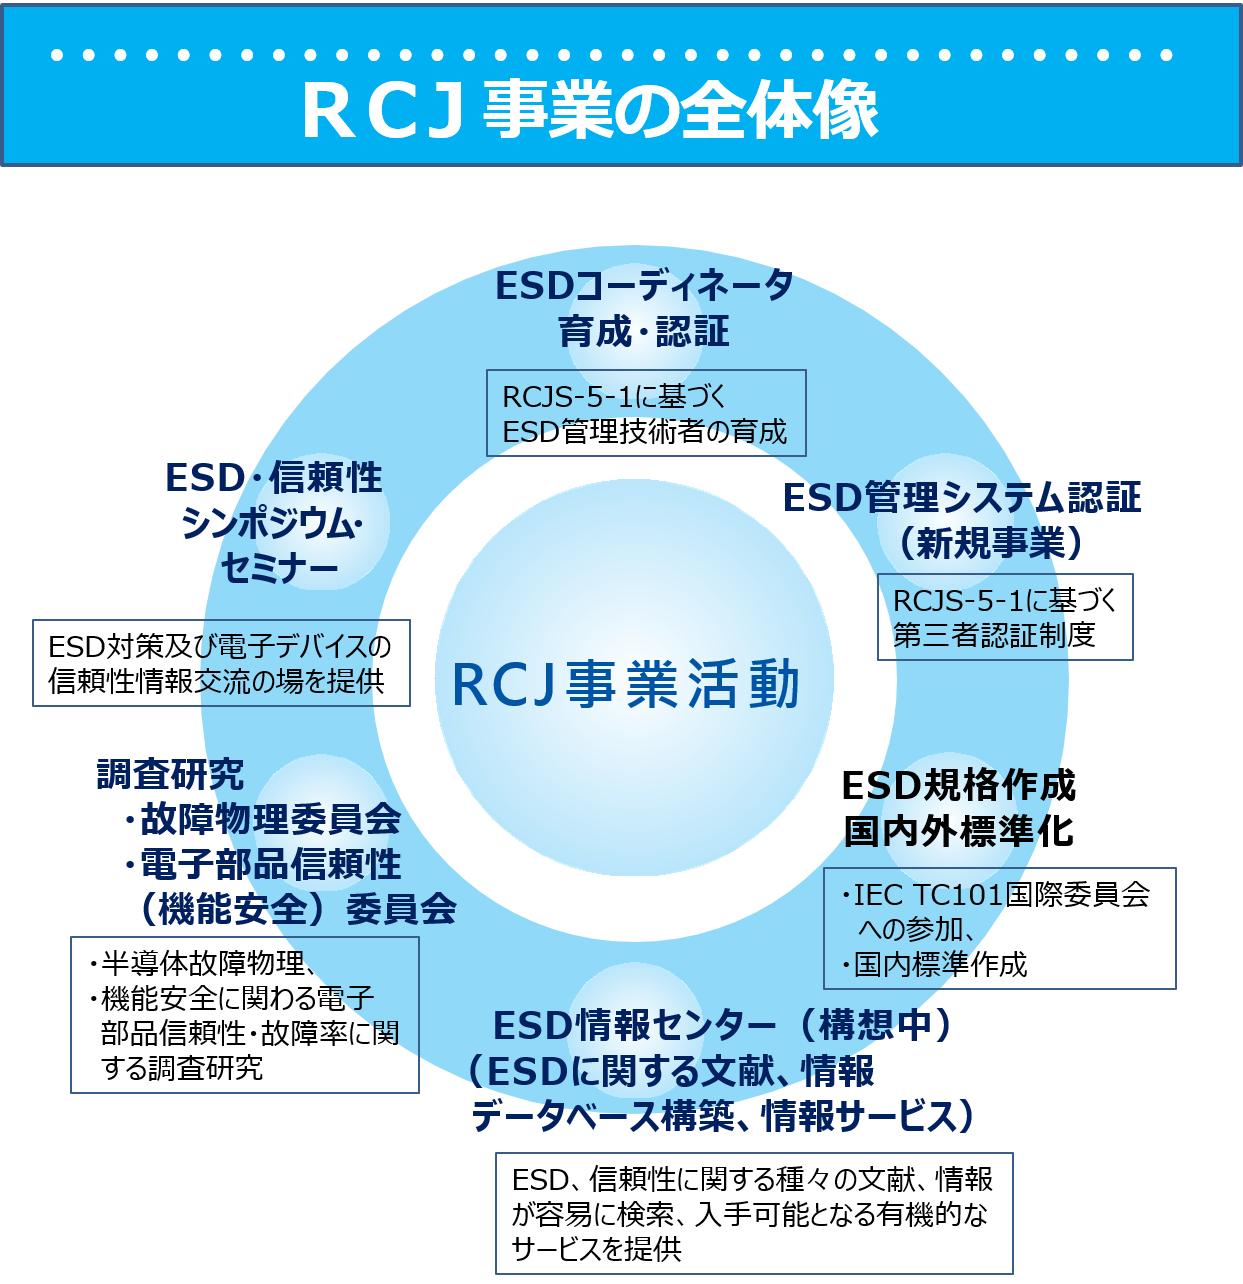 RCJ事業の全体像